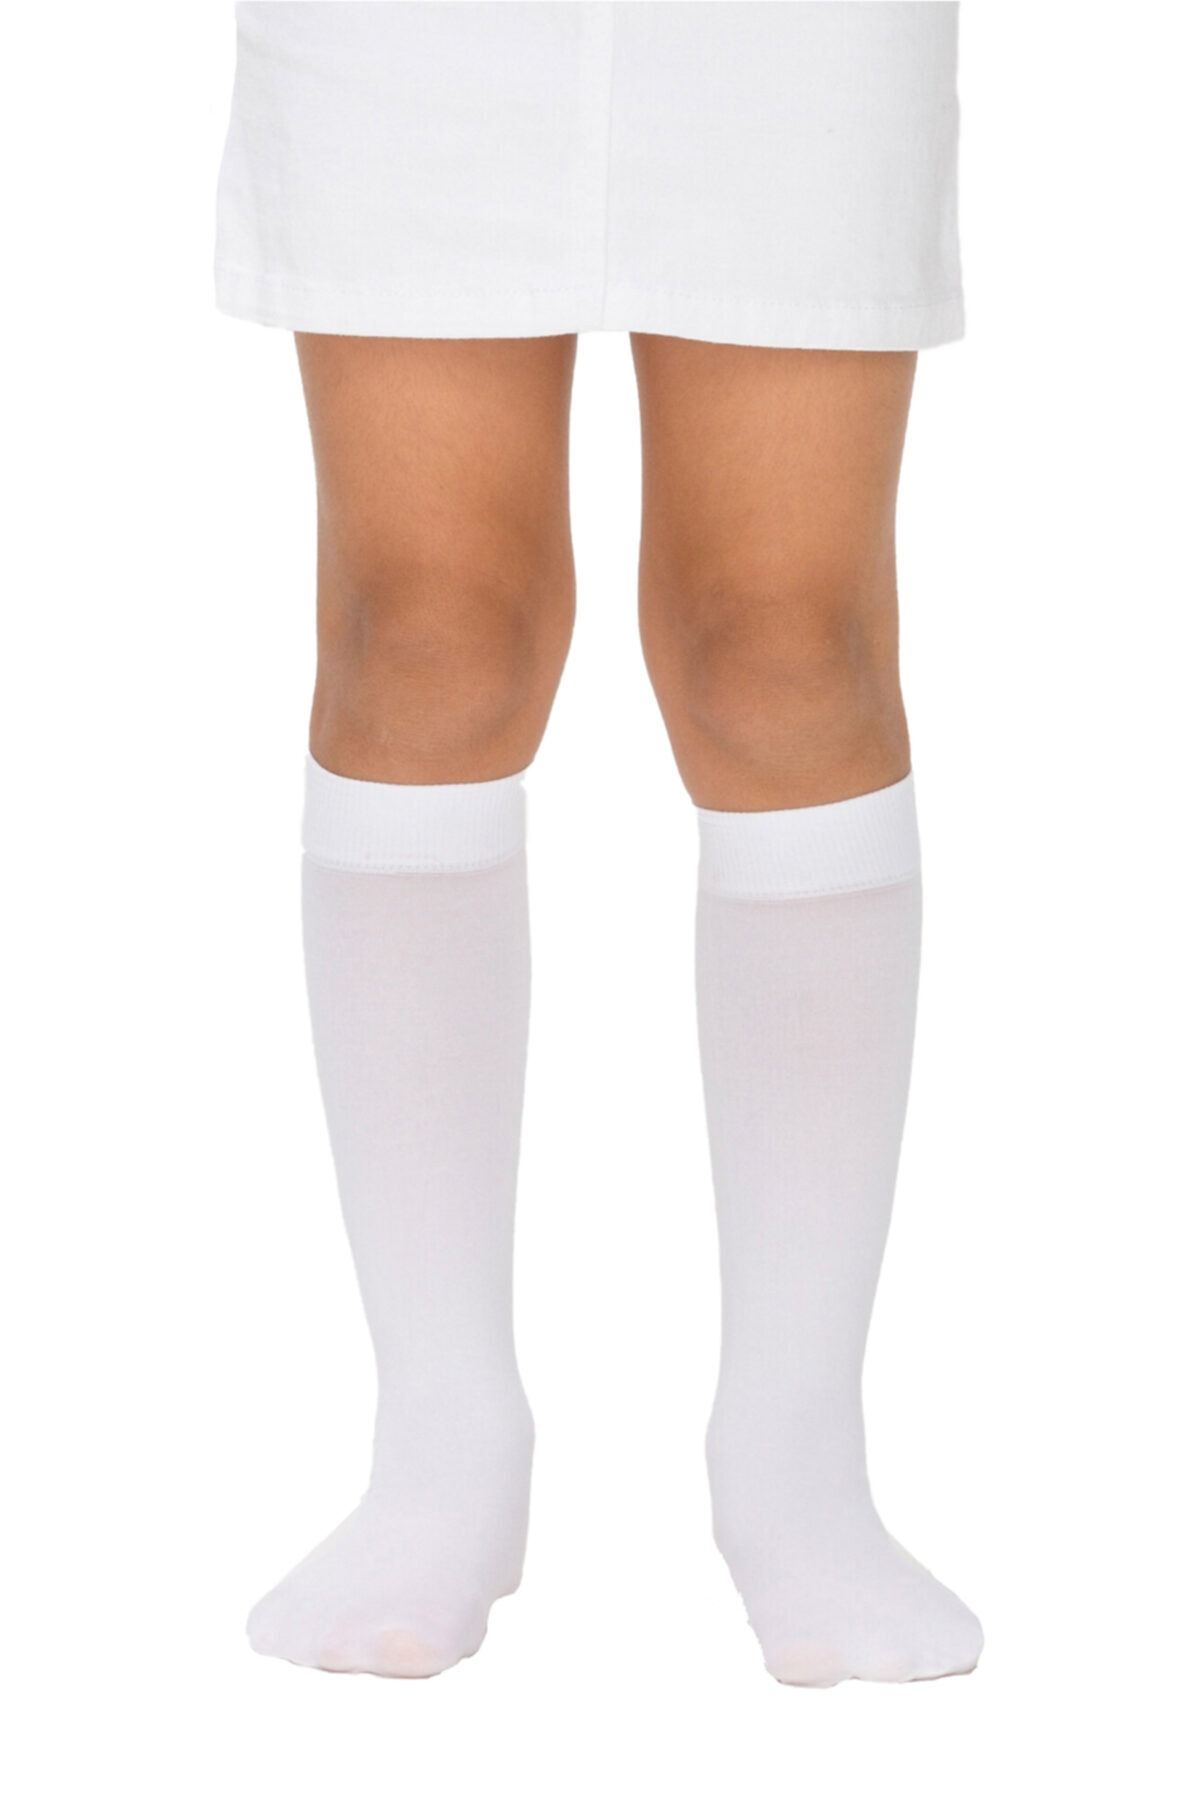 Penti Kız Çocuk Micro 40 Pantalon Dizaltı Çorap